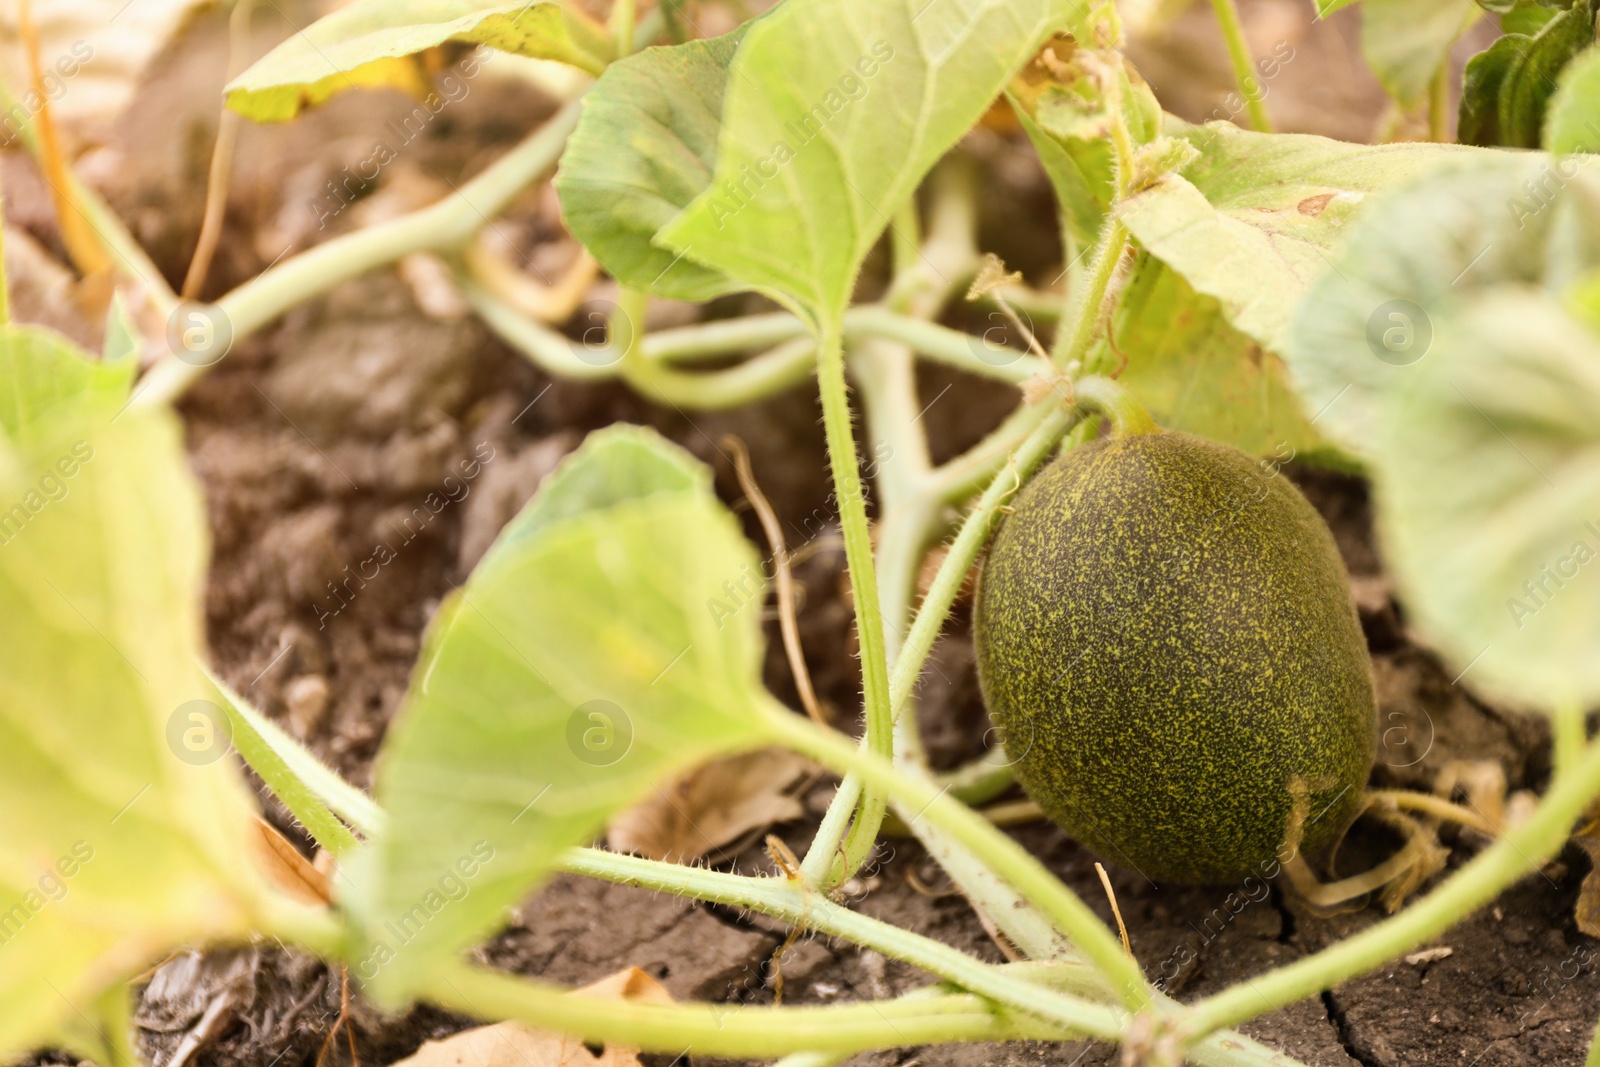 Photo of Fresh ripe juicy melon growing in field